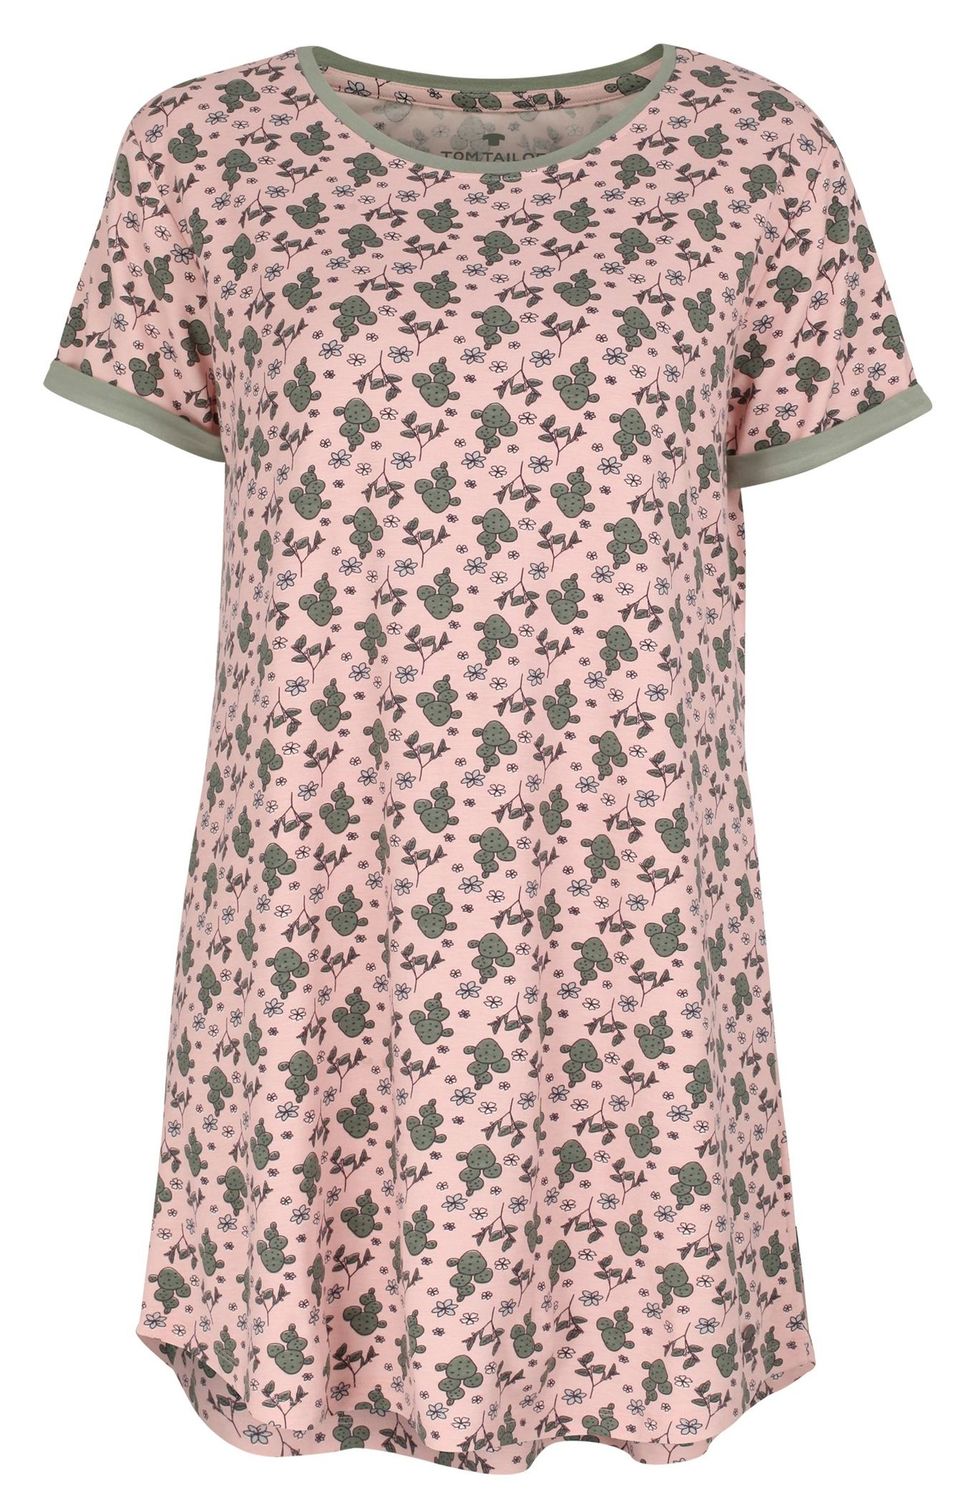 TOM TAILOR Damen Nachthemd Nightshirt Nachtwäsche Homewear kurzarm rosa  floral Kaktus | atiando